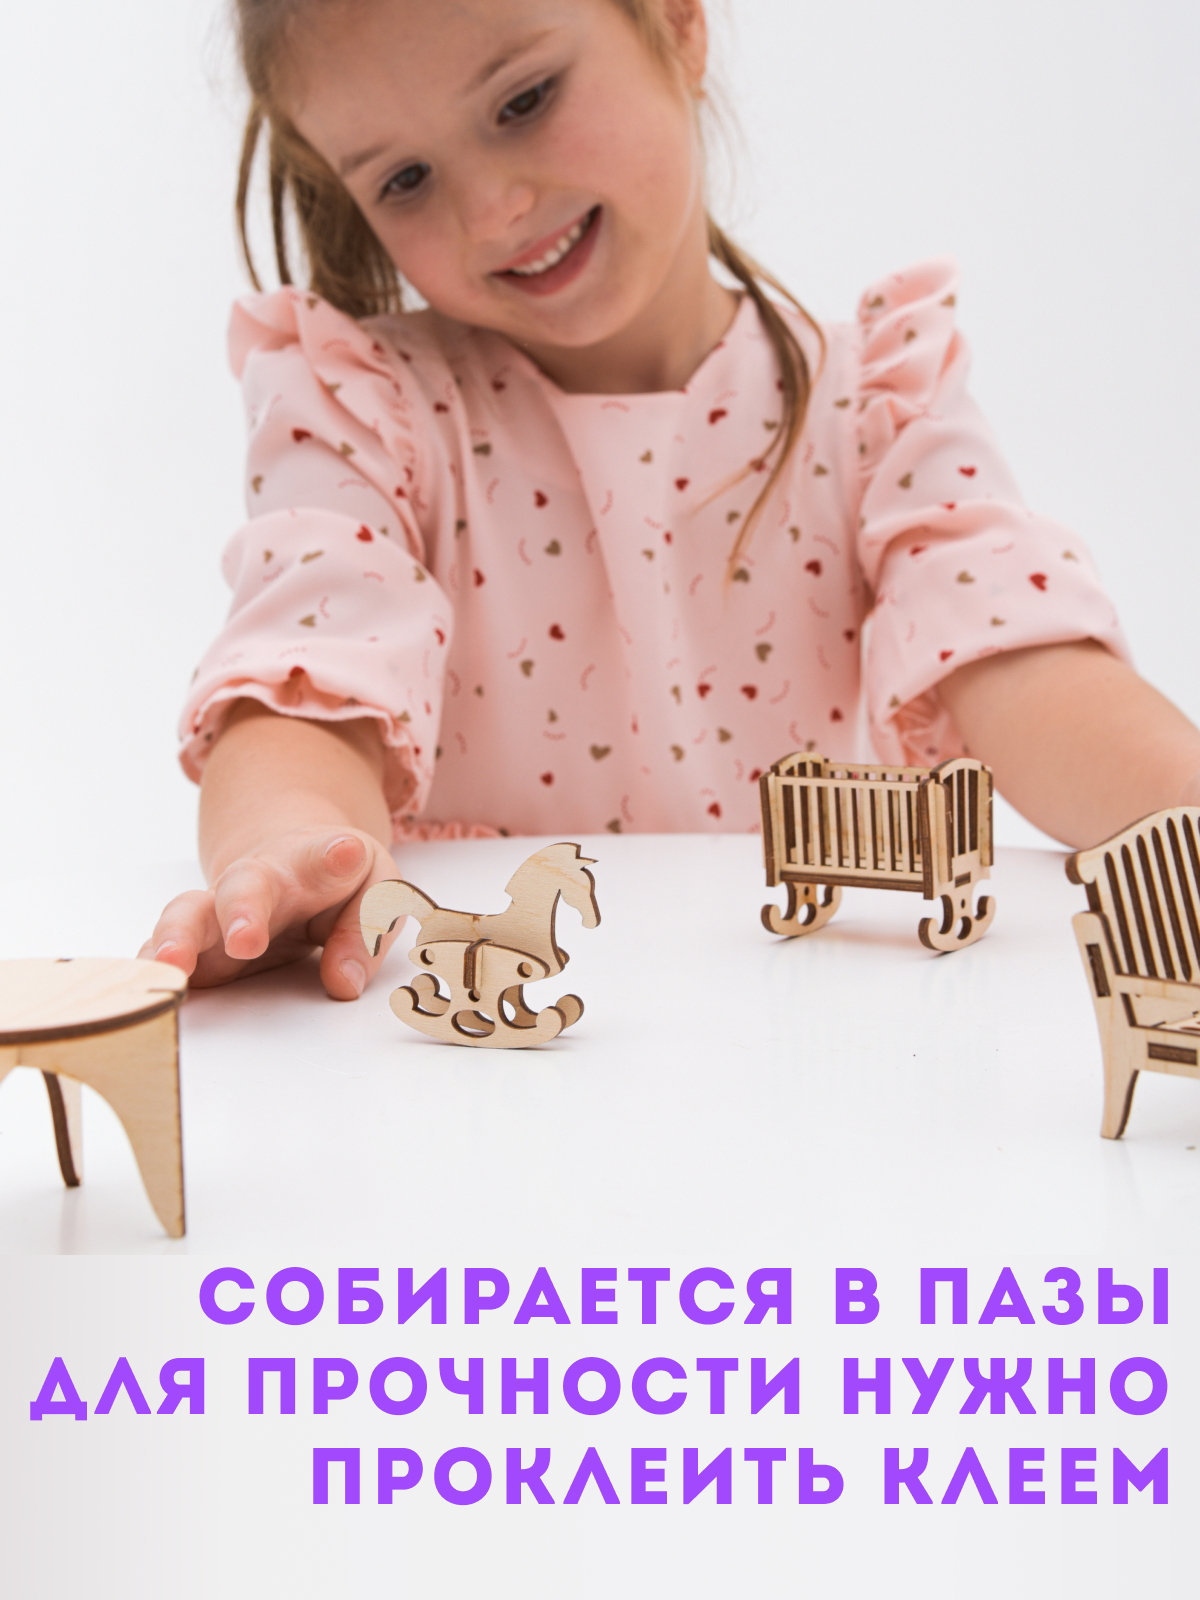 Деревянный конструктор ГРАТ мебель для кукольного домика мебель д/д - фото 3